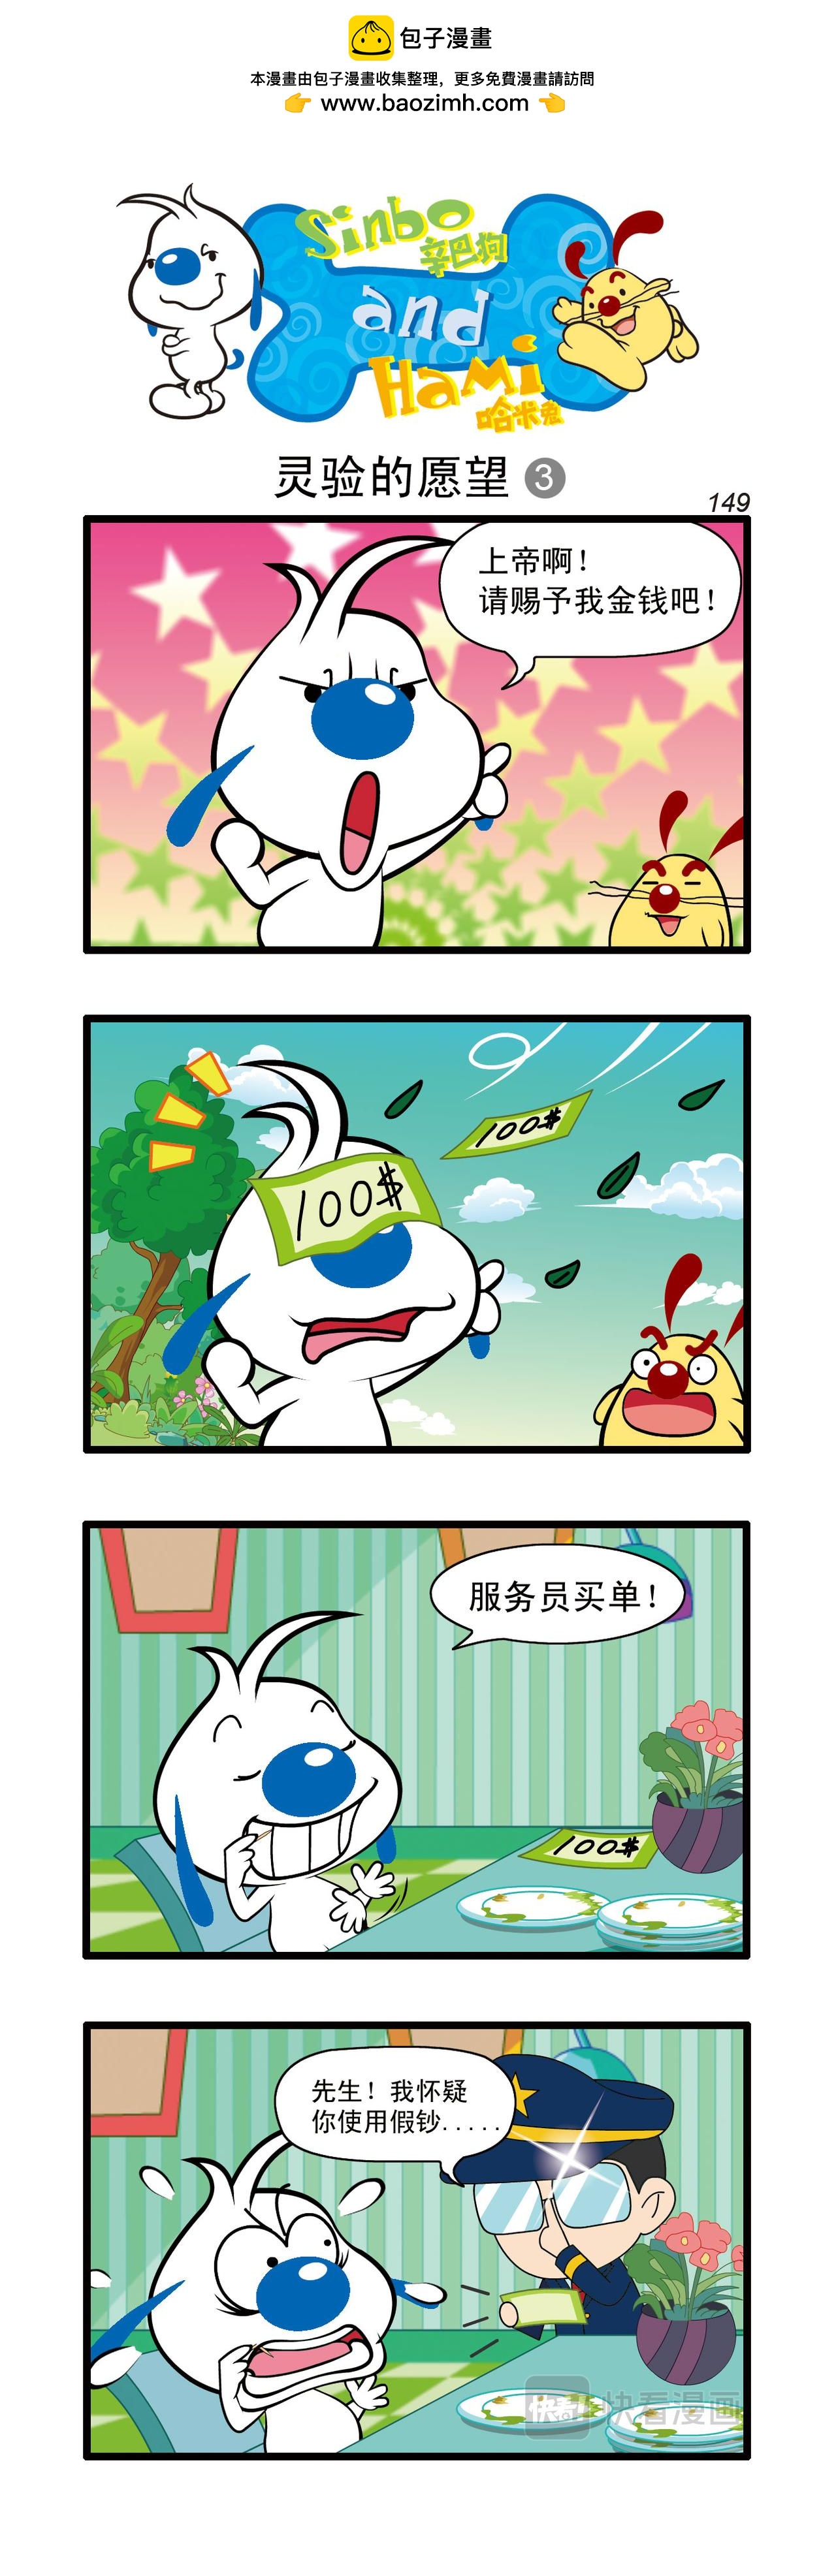 辛巴狗日常漫畫 - 多格44 - 1